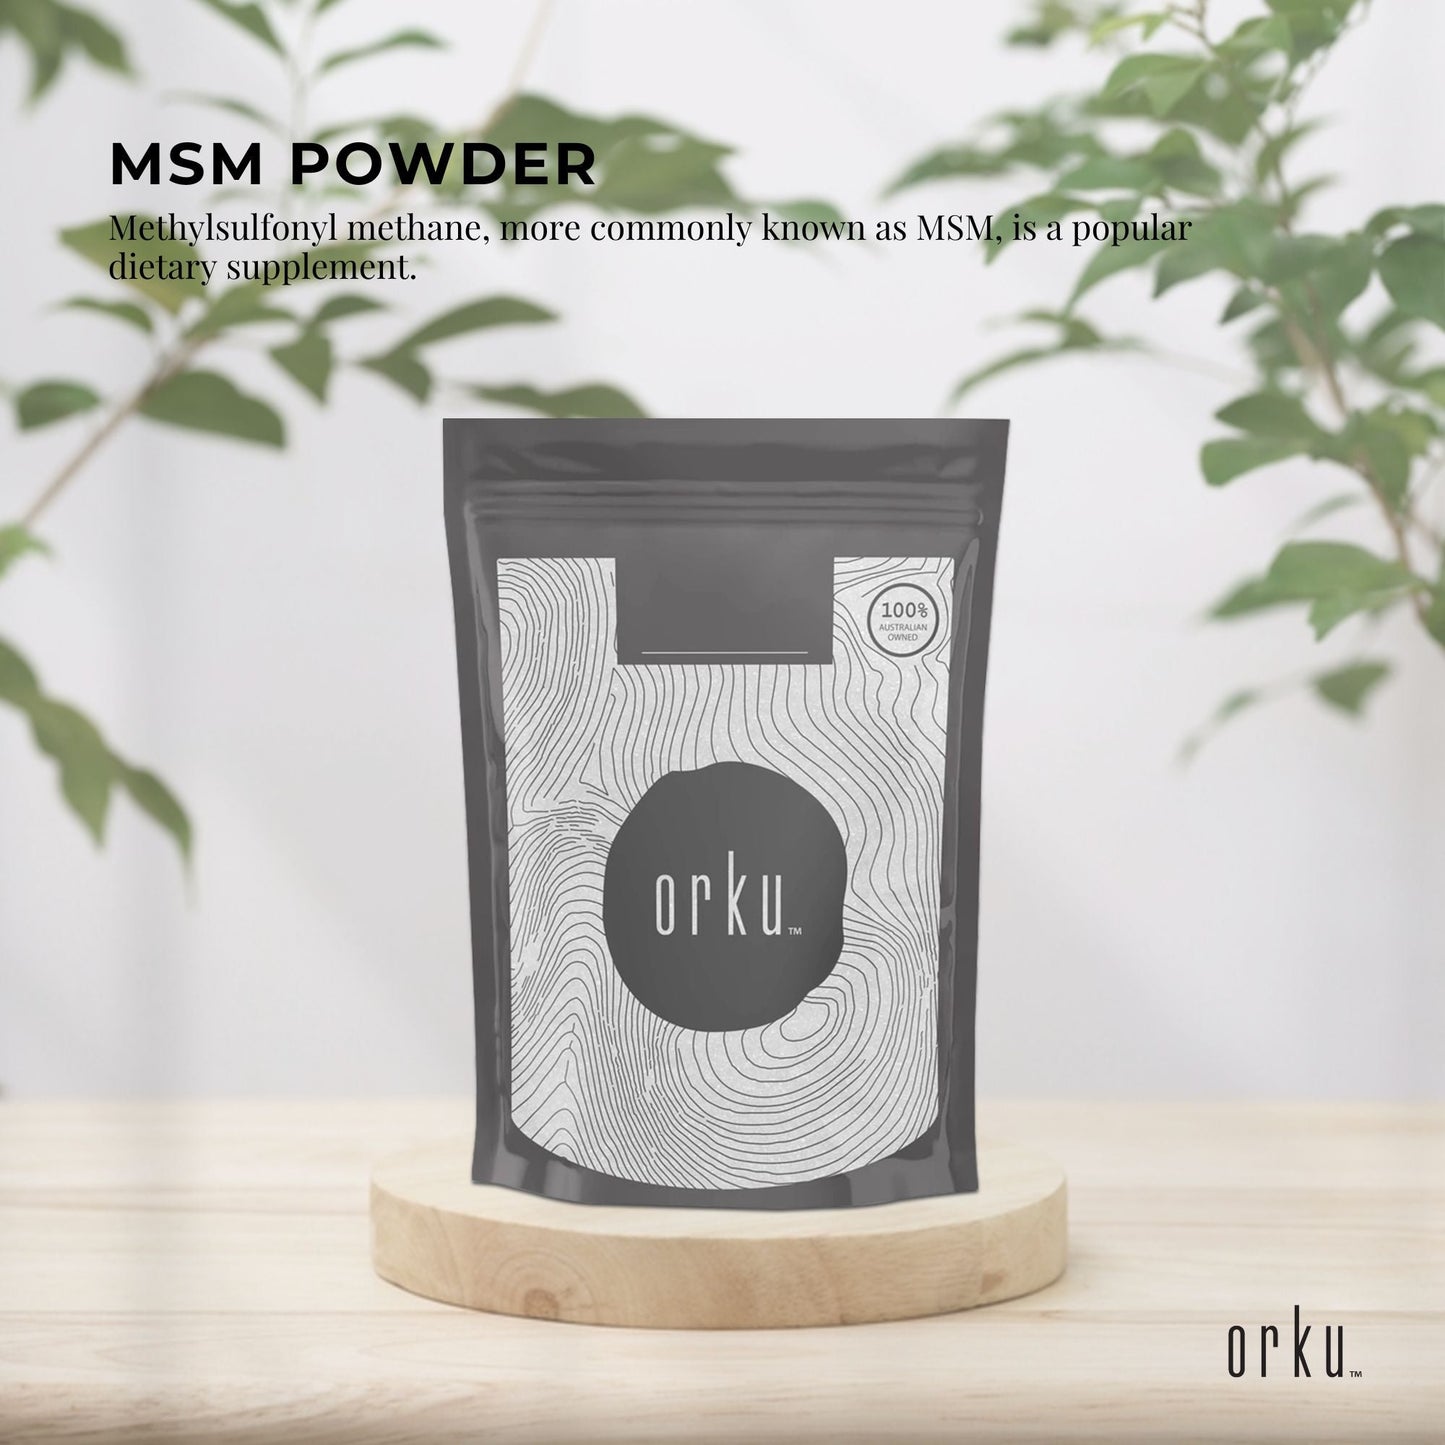 2Kg MSM Powder or Crystals Tub - 99% Pure Methylsulfonylmethane Dimethyl Sulfone